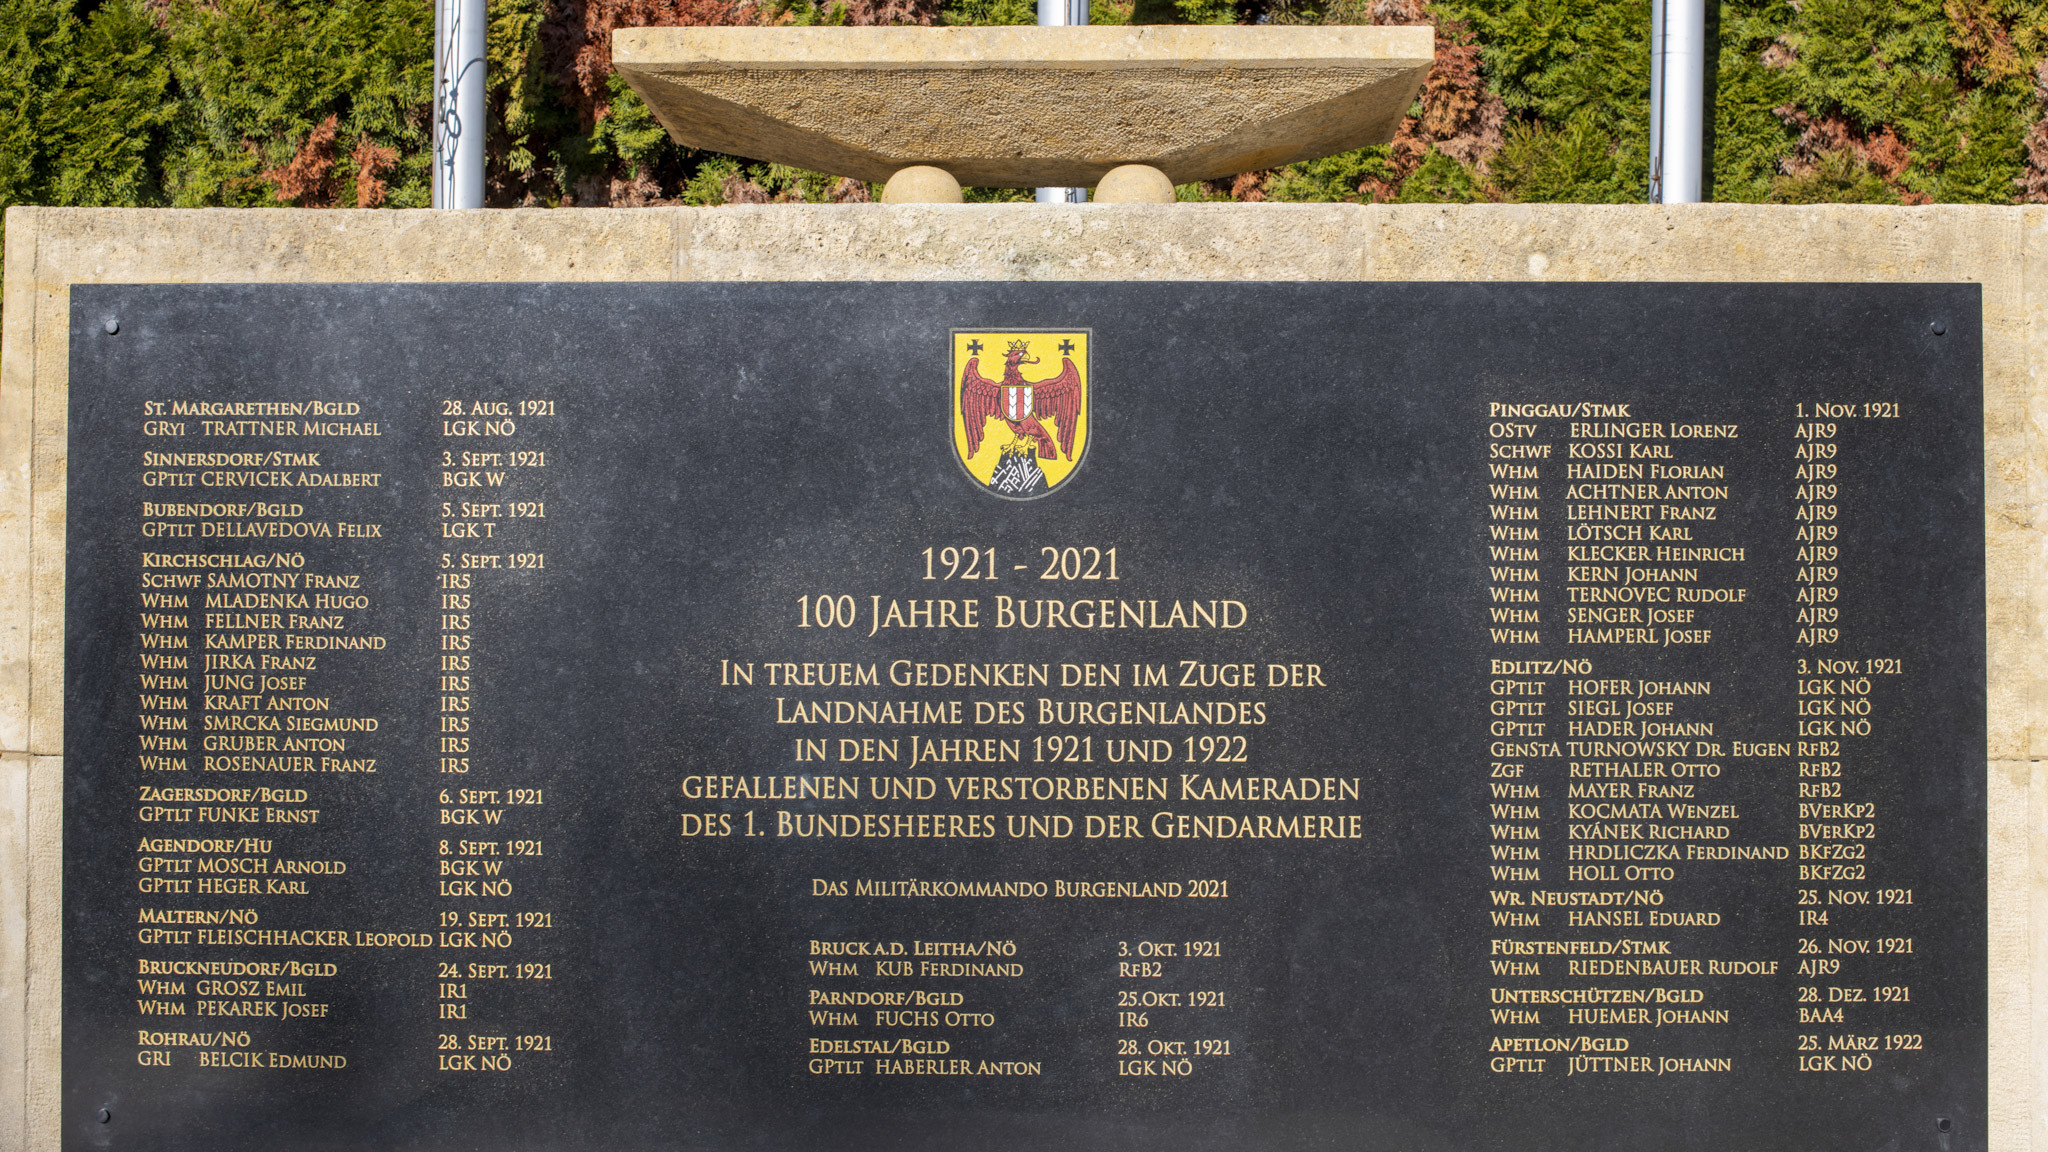 Das Denkmal in Erinnerung an die Gefallenen im Rahmen der Landnahme des Burgenlands wurde am 24. November 2021 enthüllt.